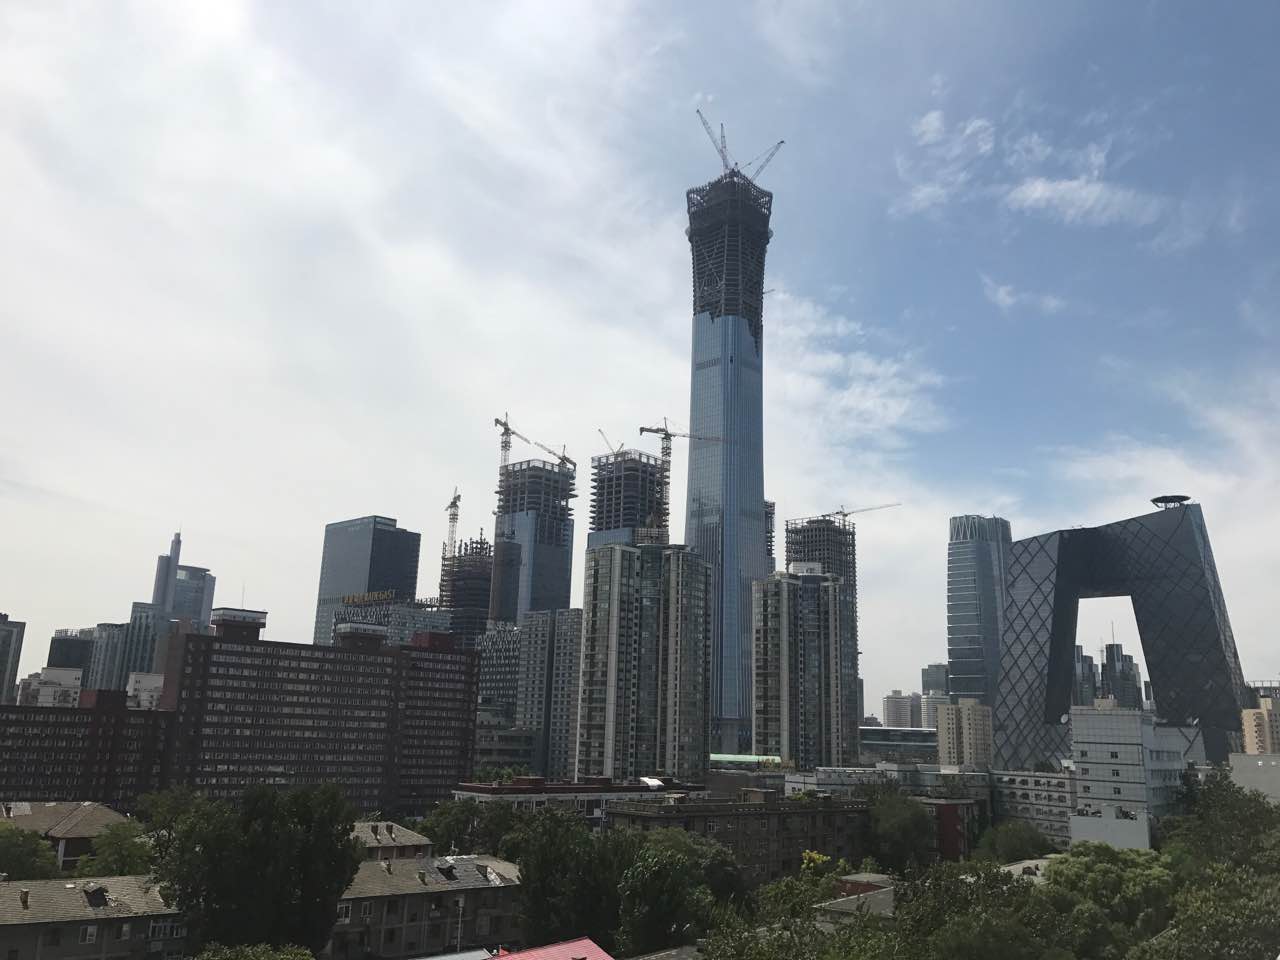 Immobilier : les effets de la réglementation se font clairement sentir en Chine